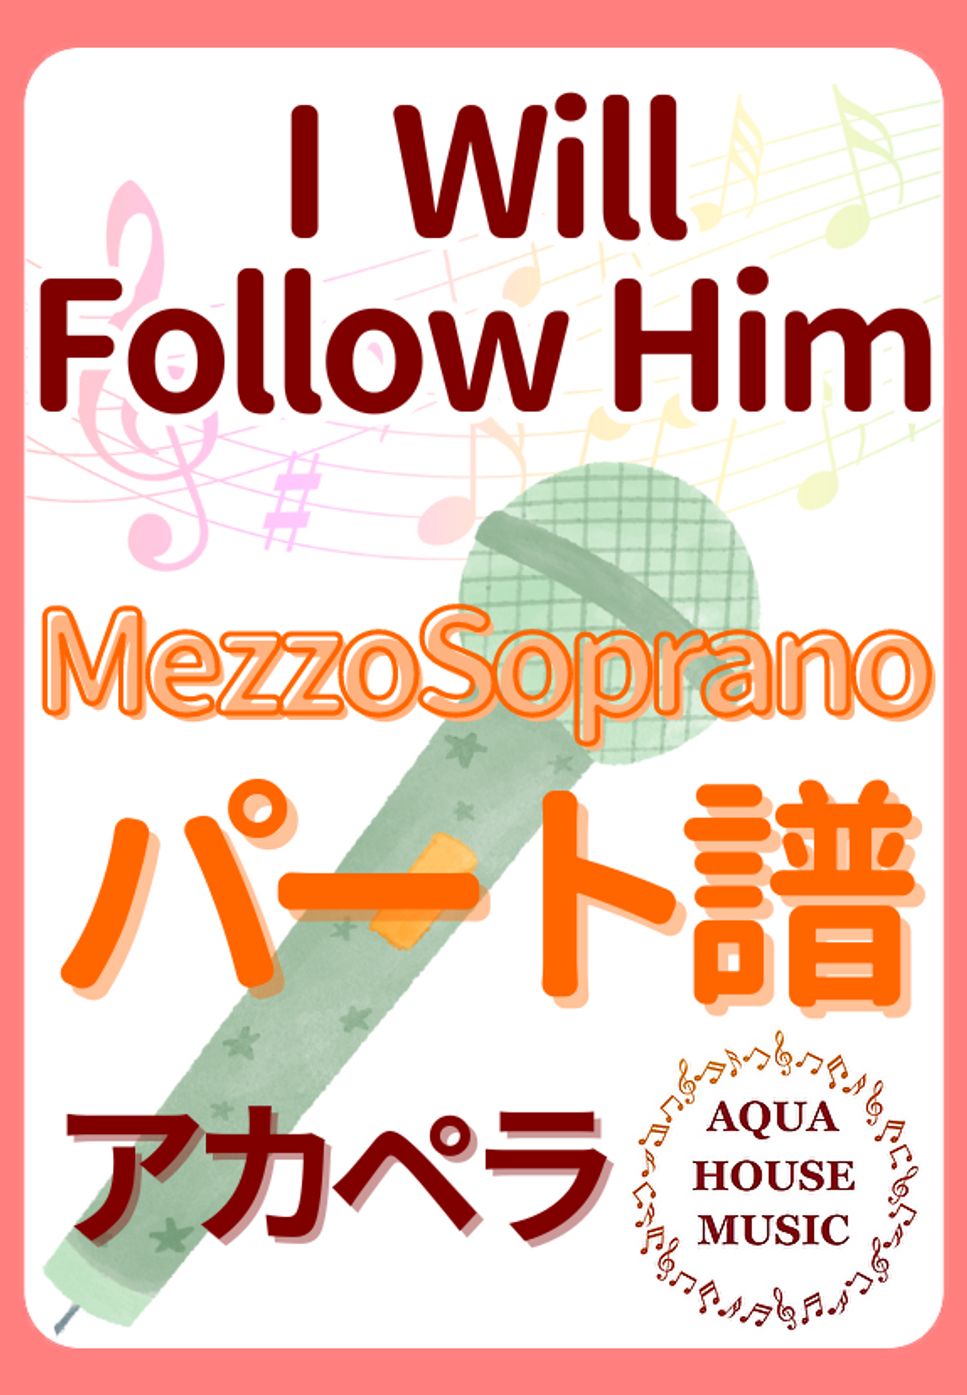 映画『天使にラブソングを』 - I Will Follow Him (アカペラ楽譜♪Mezzo sopranoパート譜) by 飯田 亜紗子